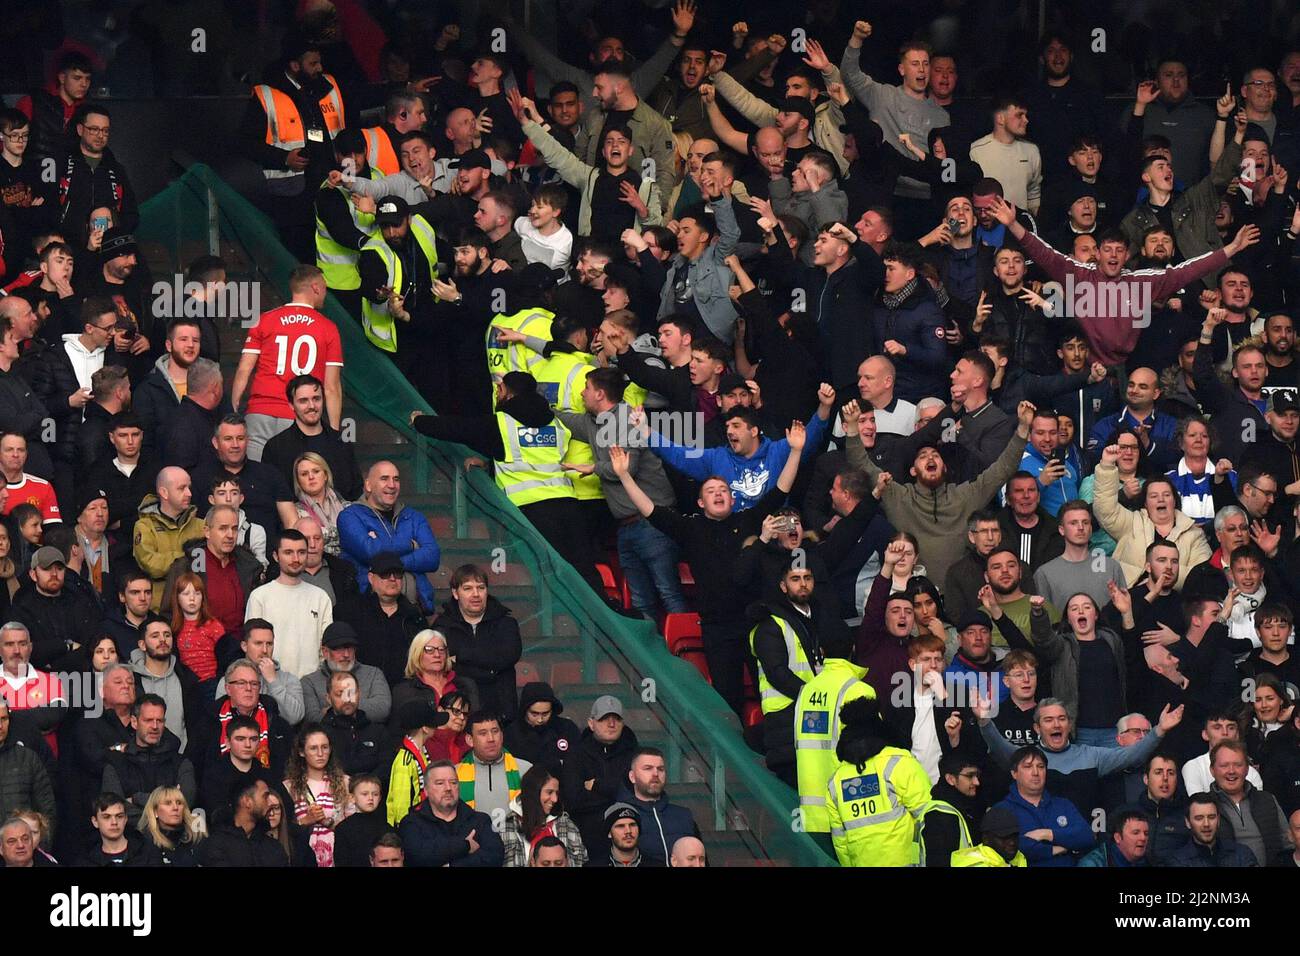 Die Fans von Leicester City reagieren während des Spiels in der Premier League in Old Trafford, Greater Manchester, Großbritannien, auf die Fans von Manchester United. Bilddatum: Samstag, 2. April 2022. Bildnachweis sollte lauten: Anthony Devlin Stockfoto